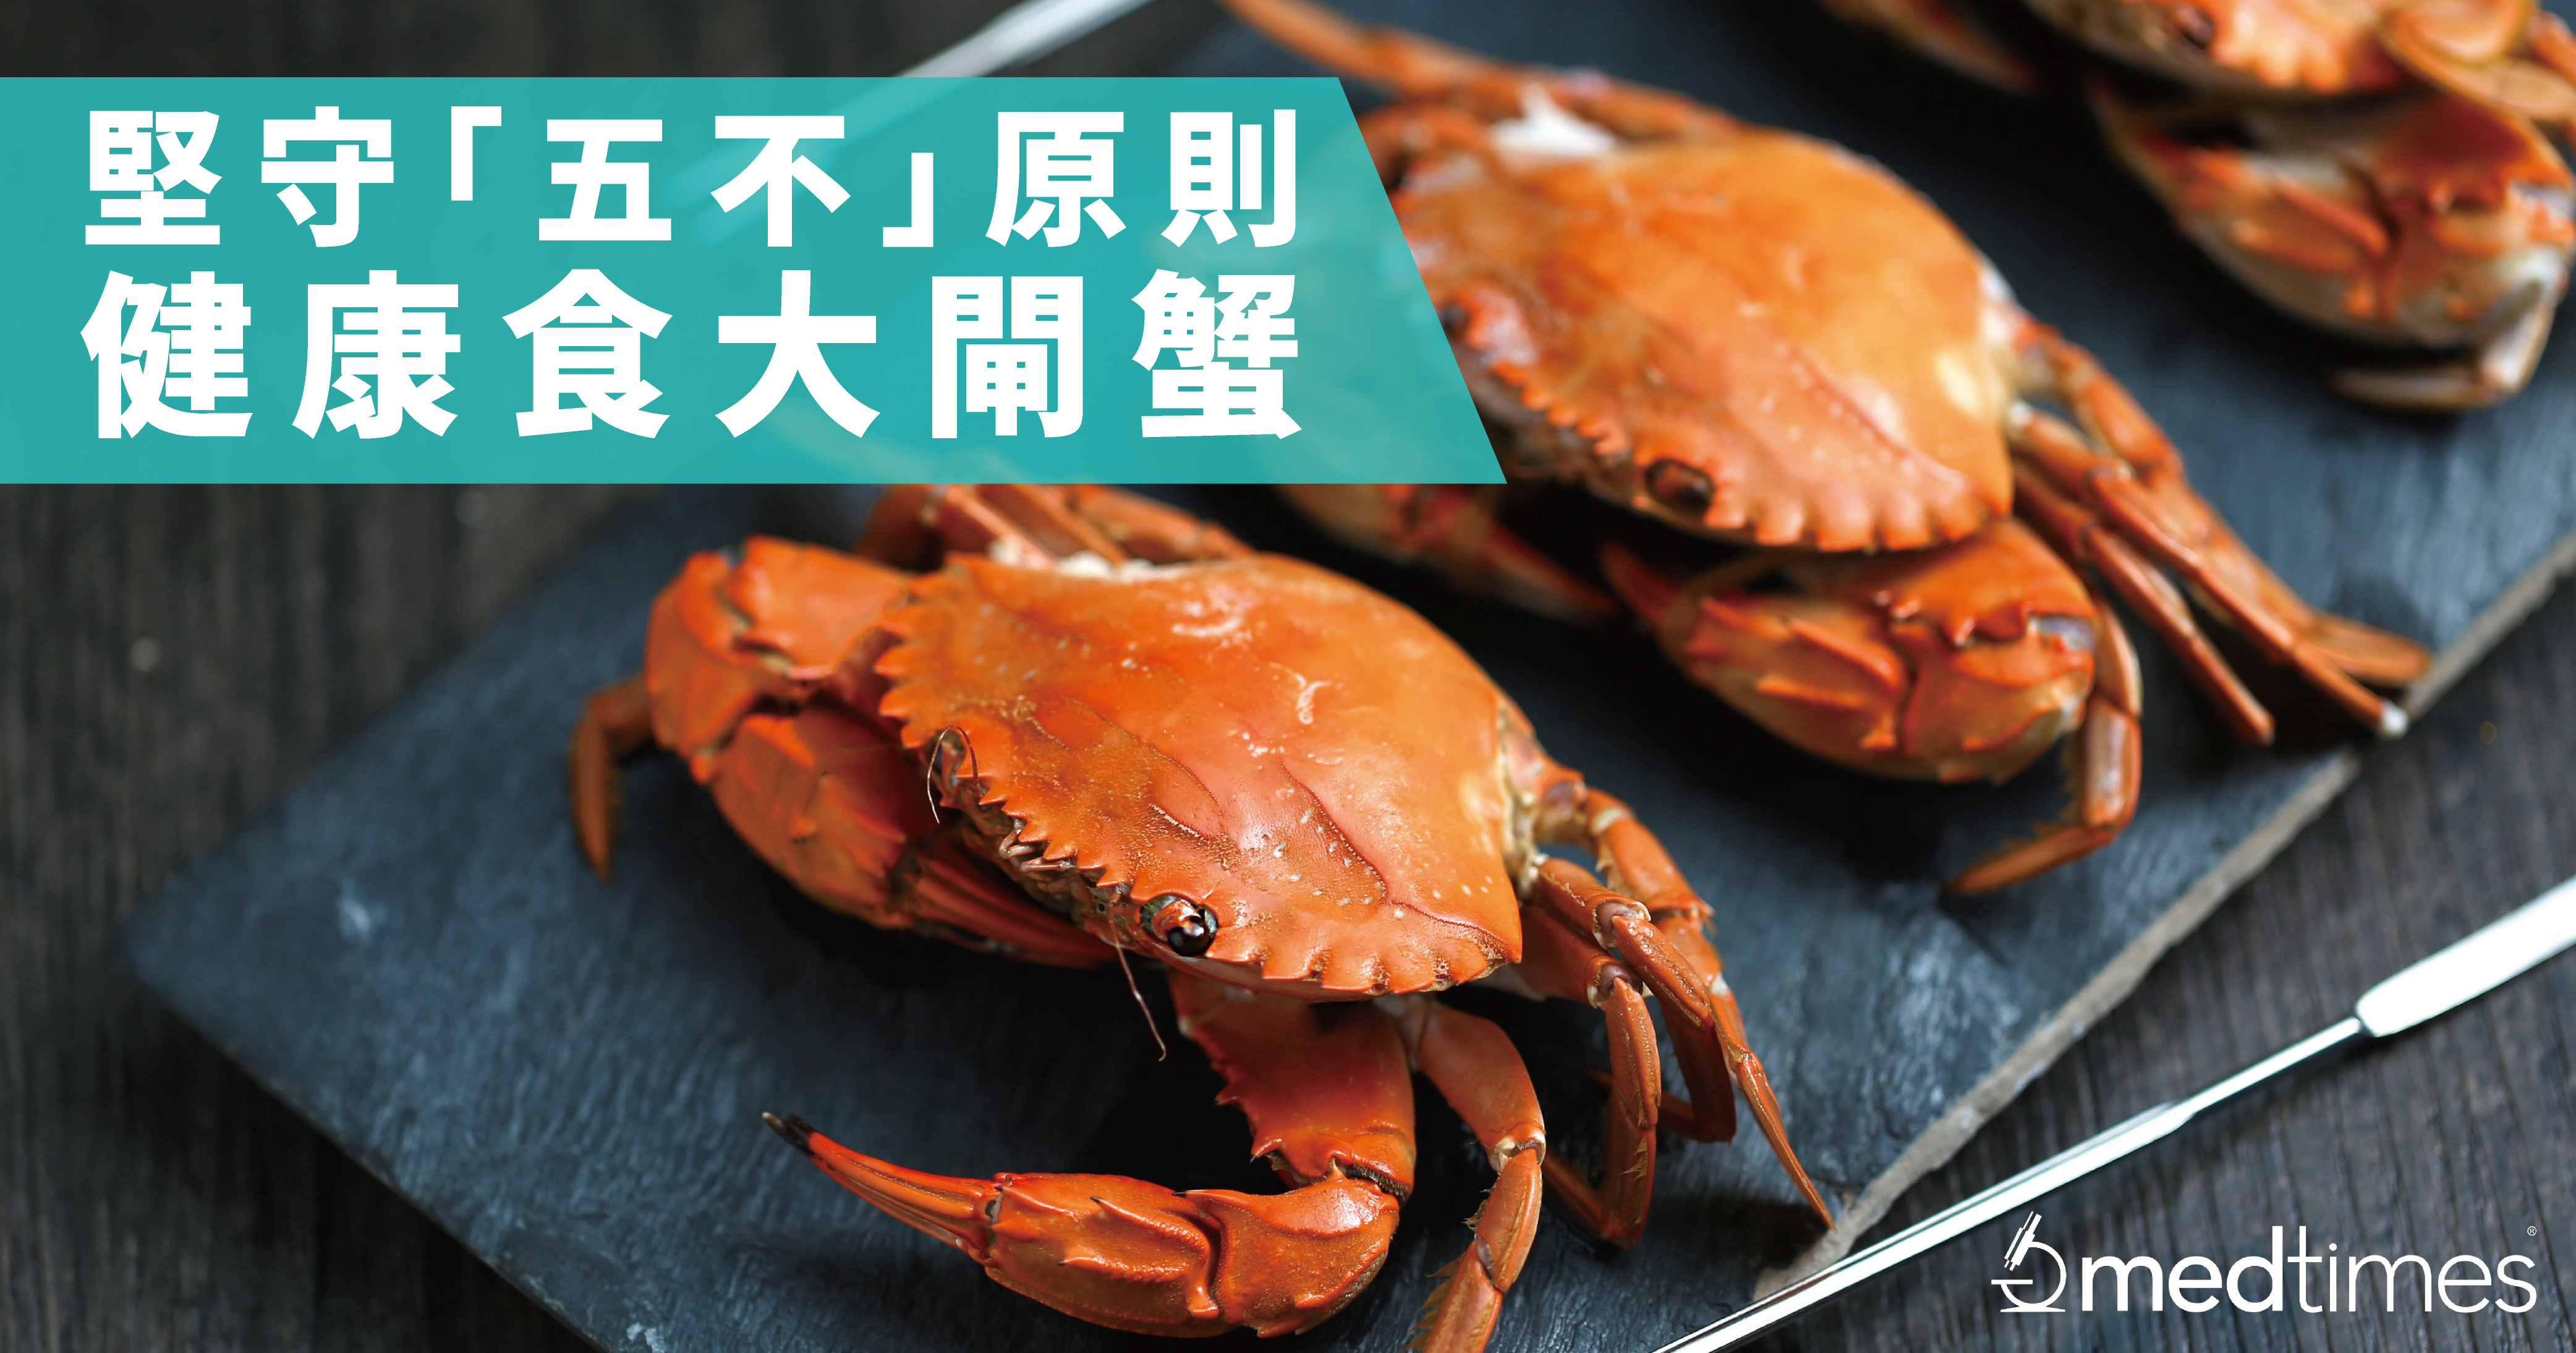 【營食貼士】大閘蟹十月當造　堅守「五不」原則健康食蟹